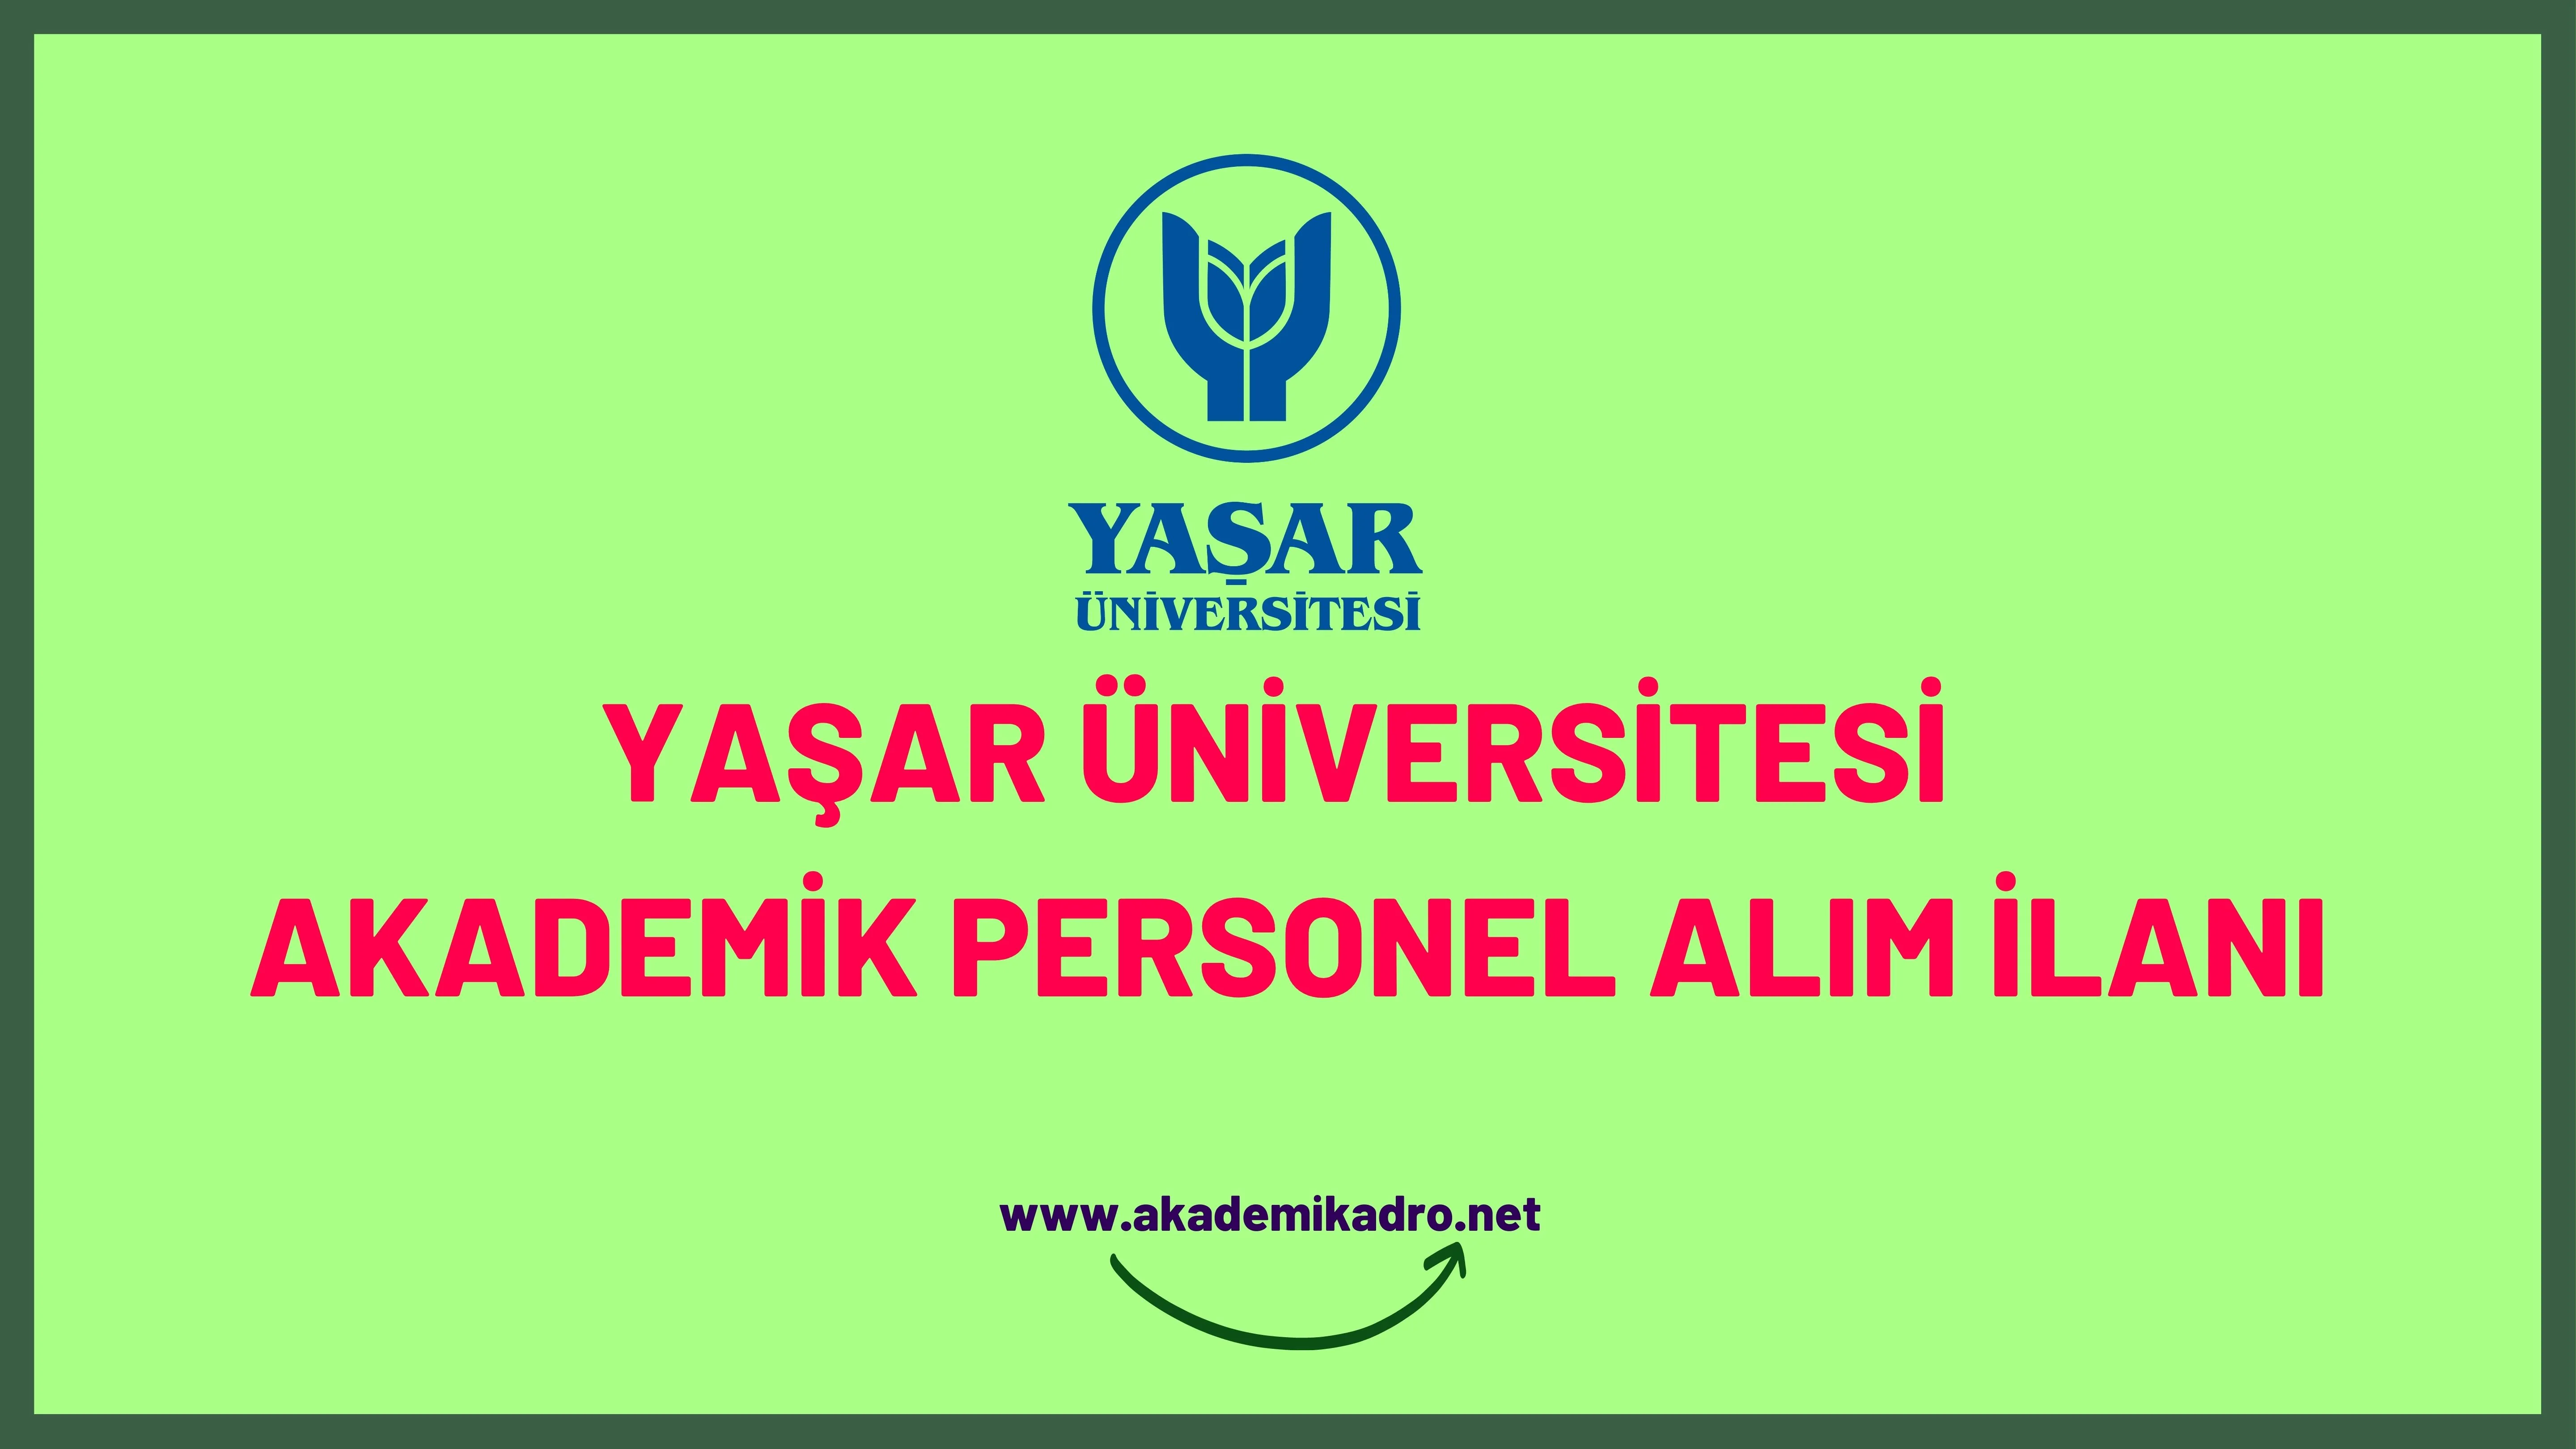 Yaşar Üniversitesi birçok alandan 9 Akademik personel alacak.